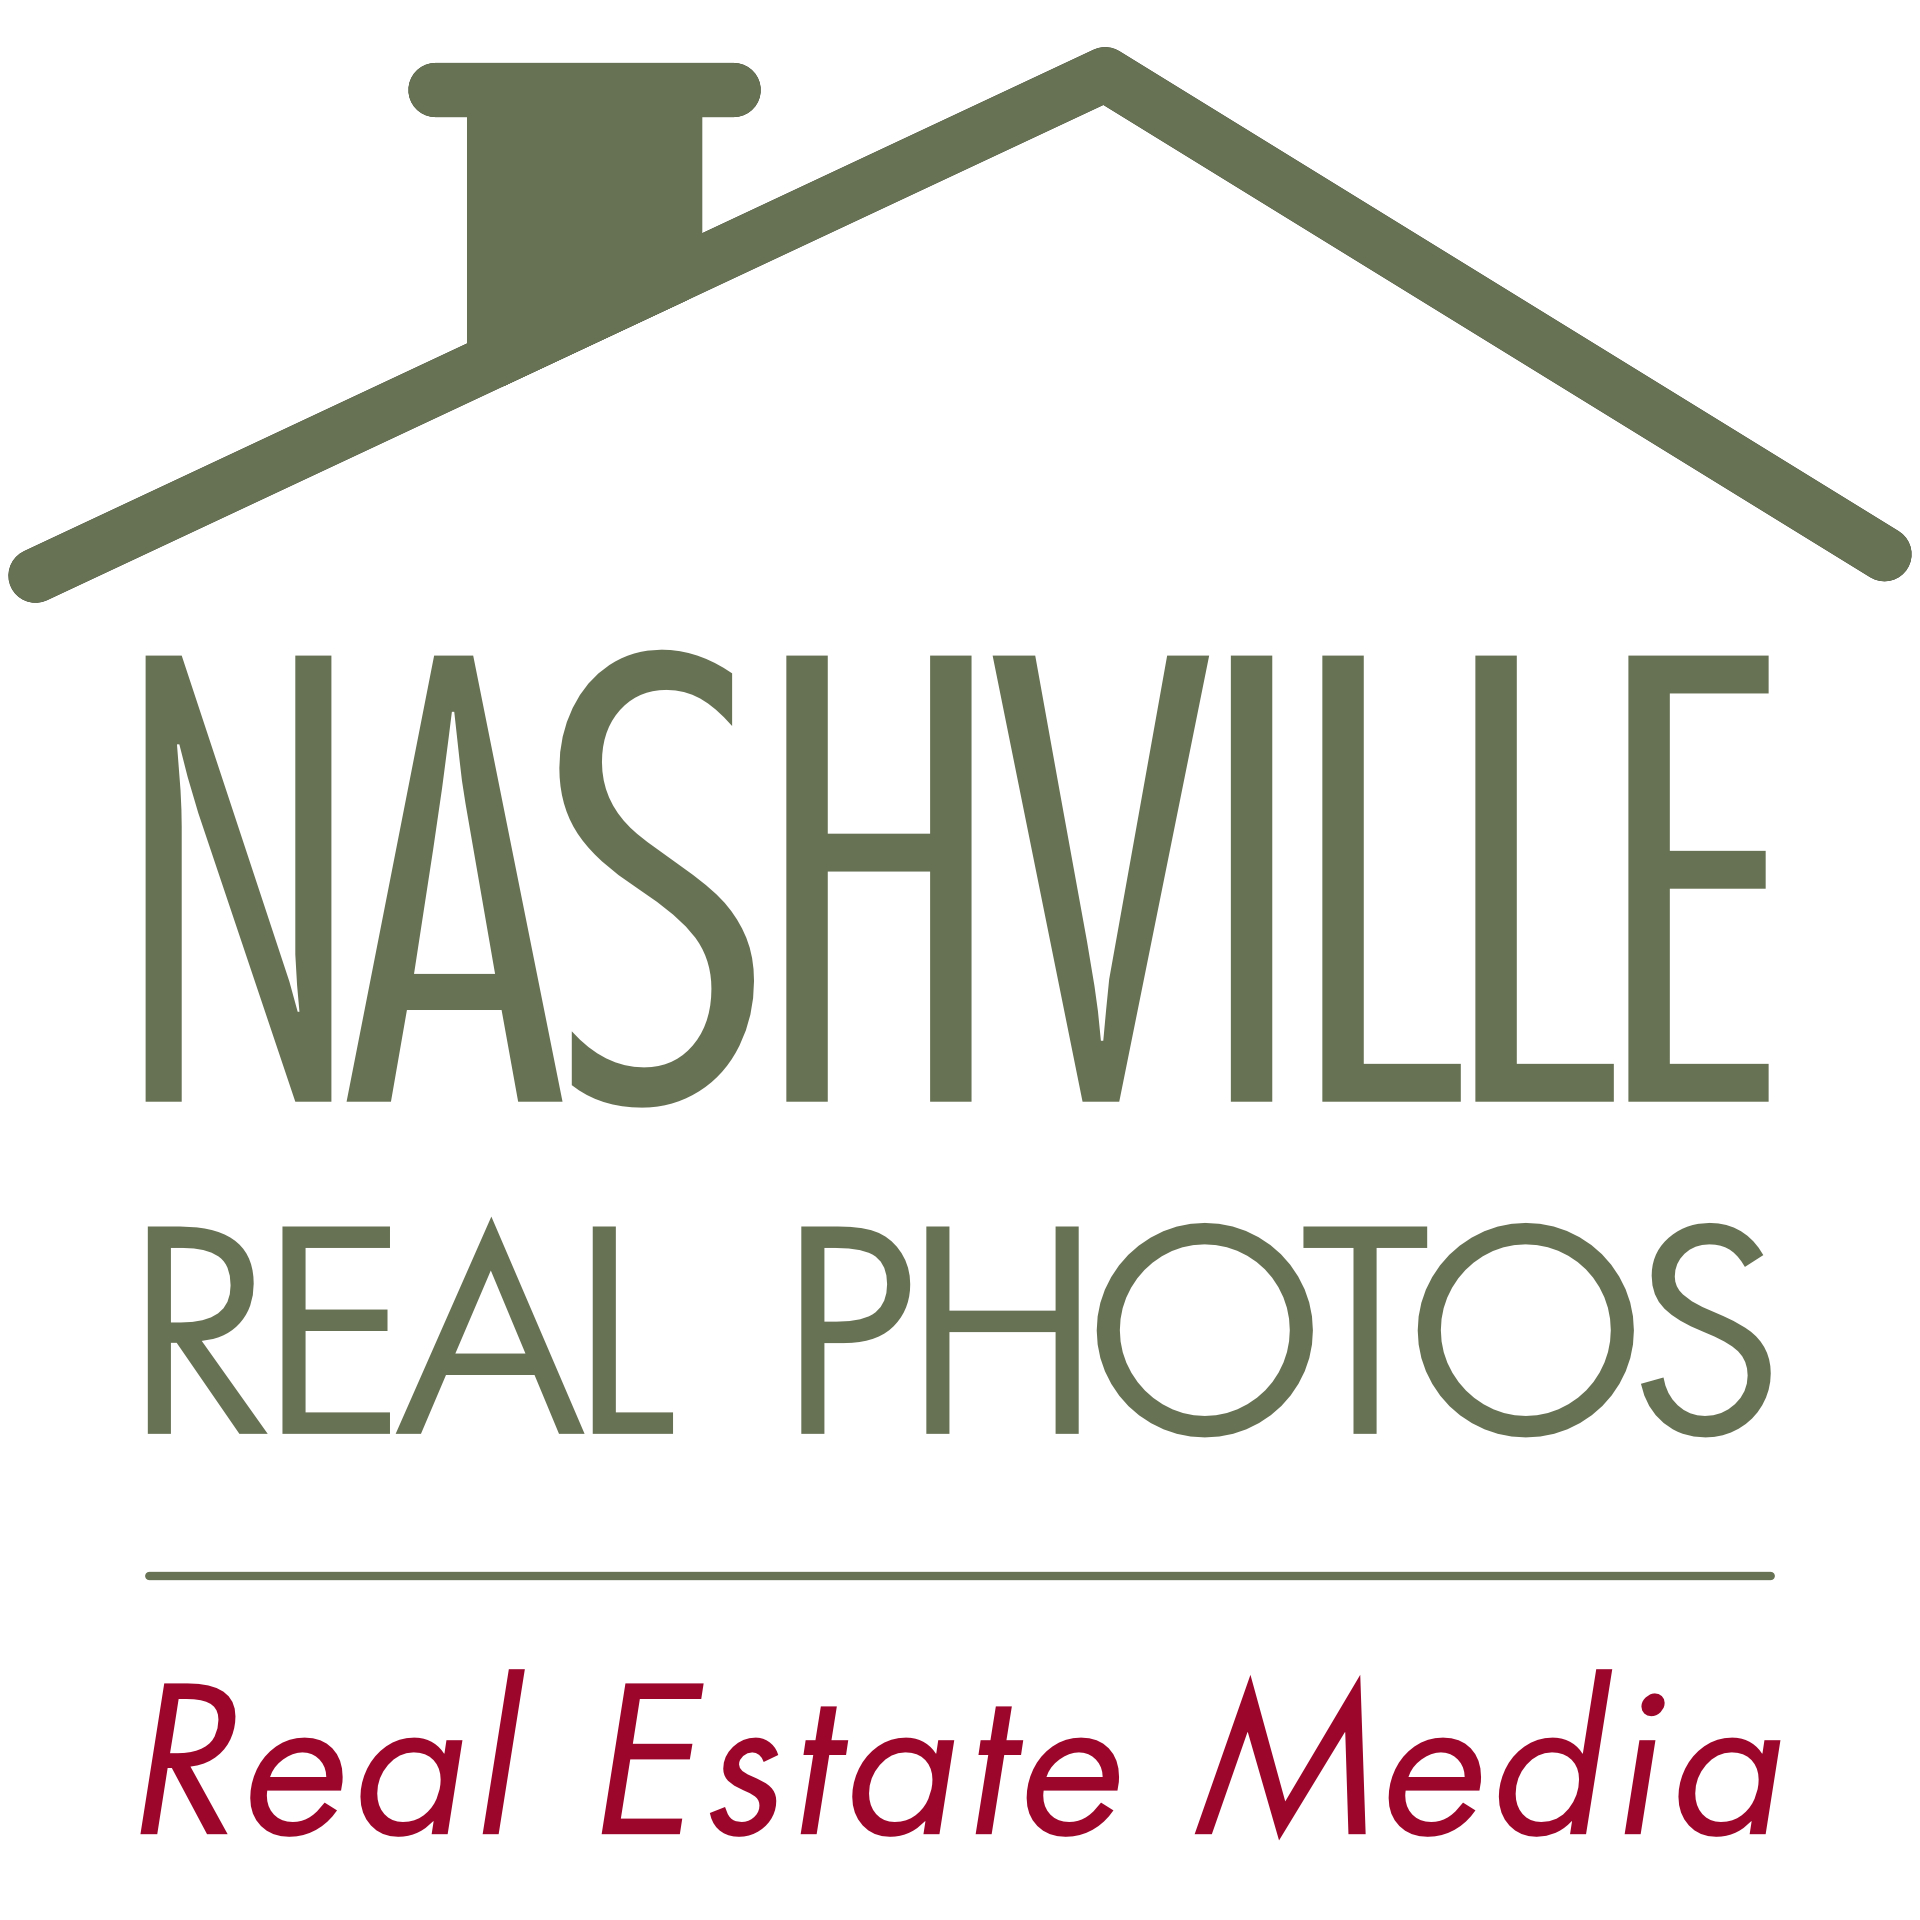 Nashville Real Photos. Real Estate Photos, Video, Marketing